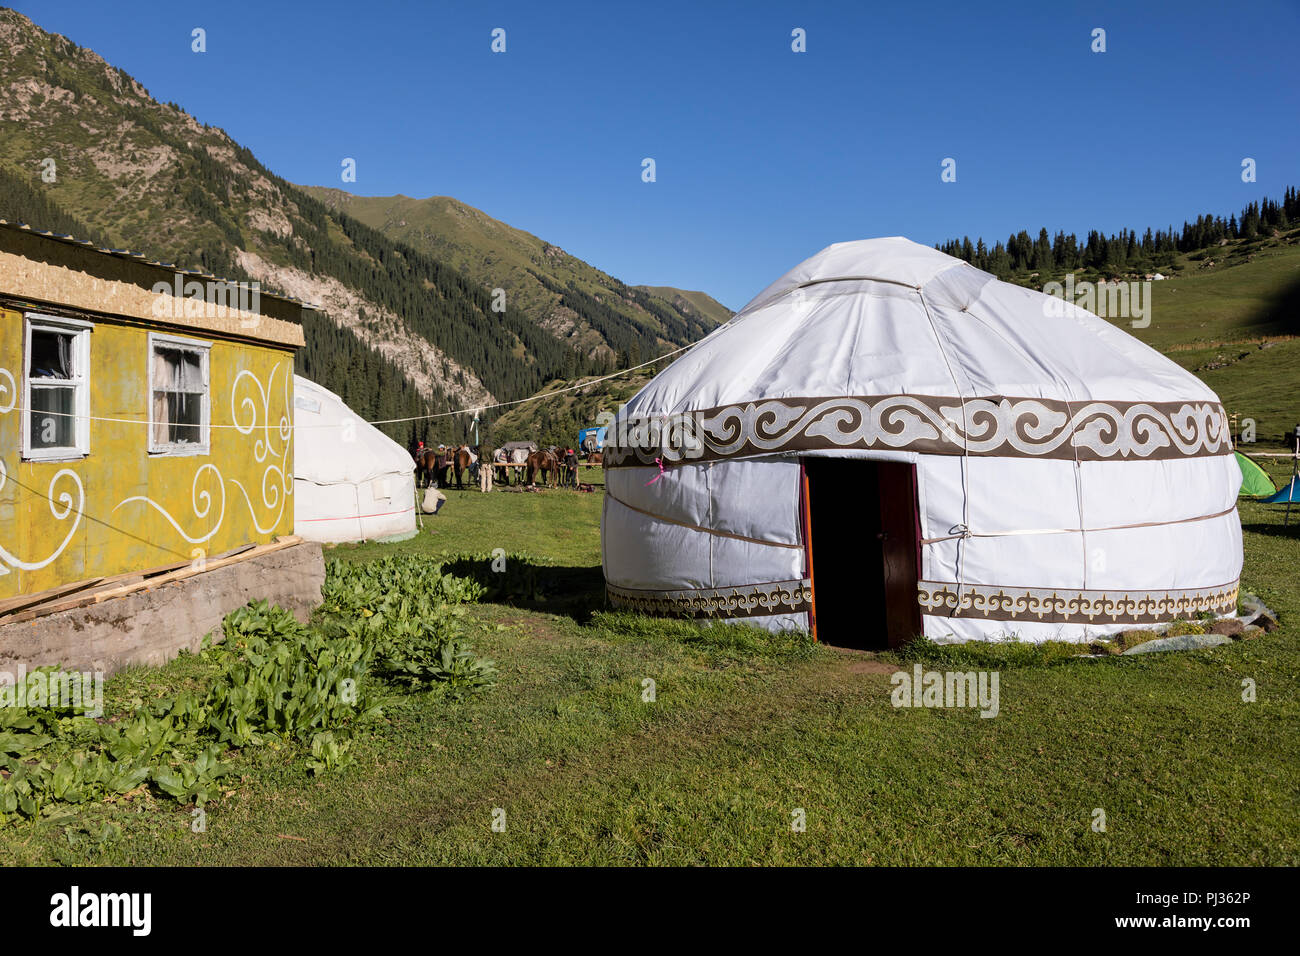 Altyn-Arashan, Kirghizistan, 13 août 2018 : Camp de Yourte dans la vallée de Karakol au Kirghizistan près de Altyn-Arashan Banque D'Images